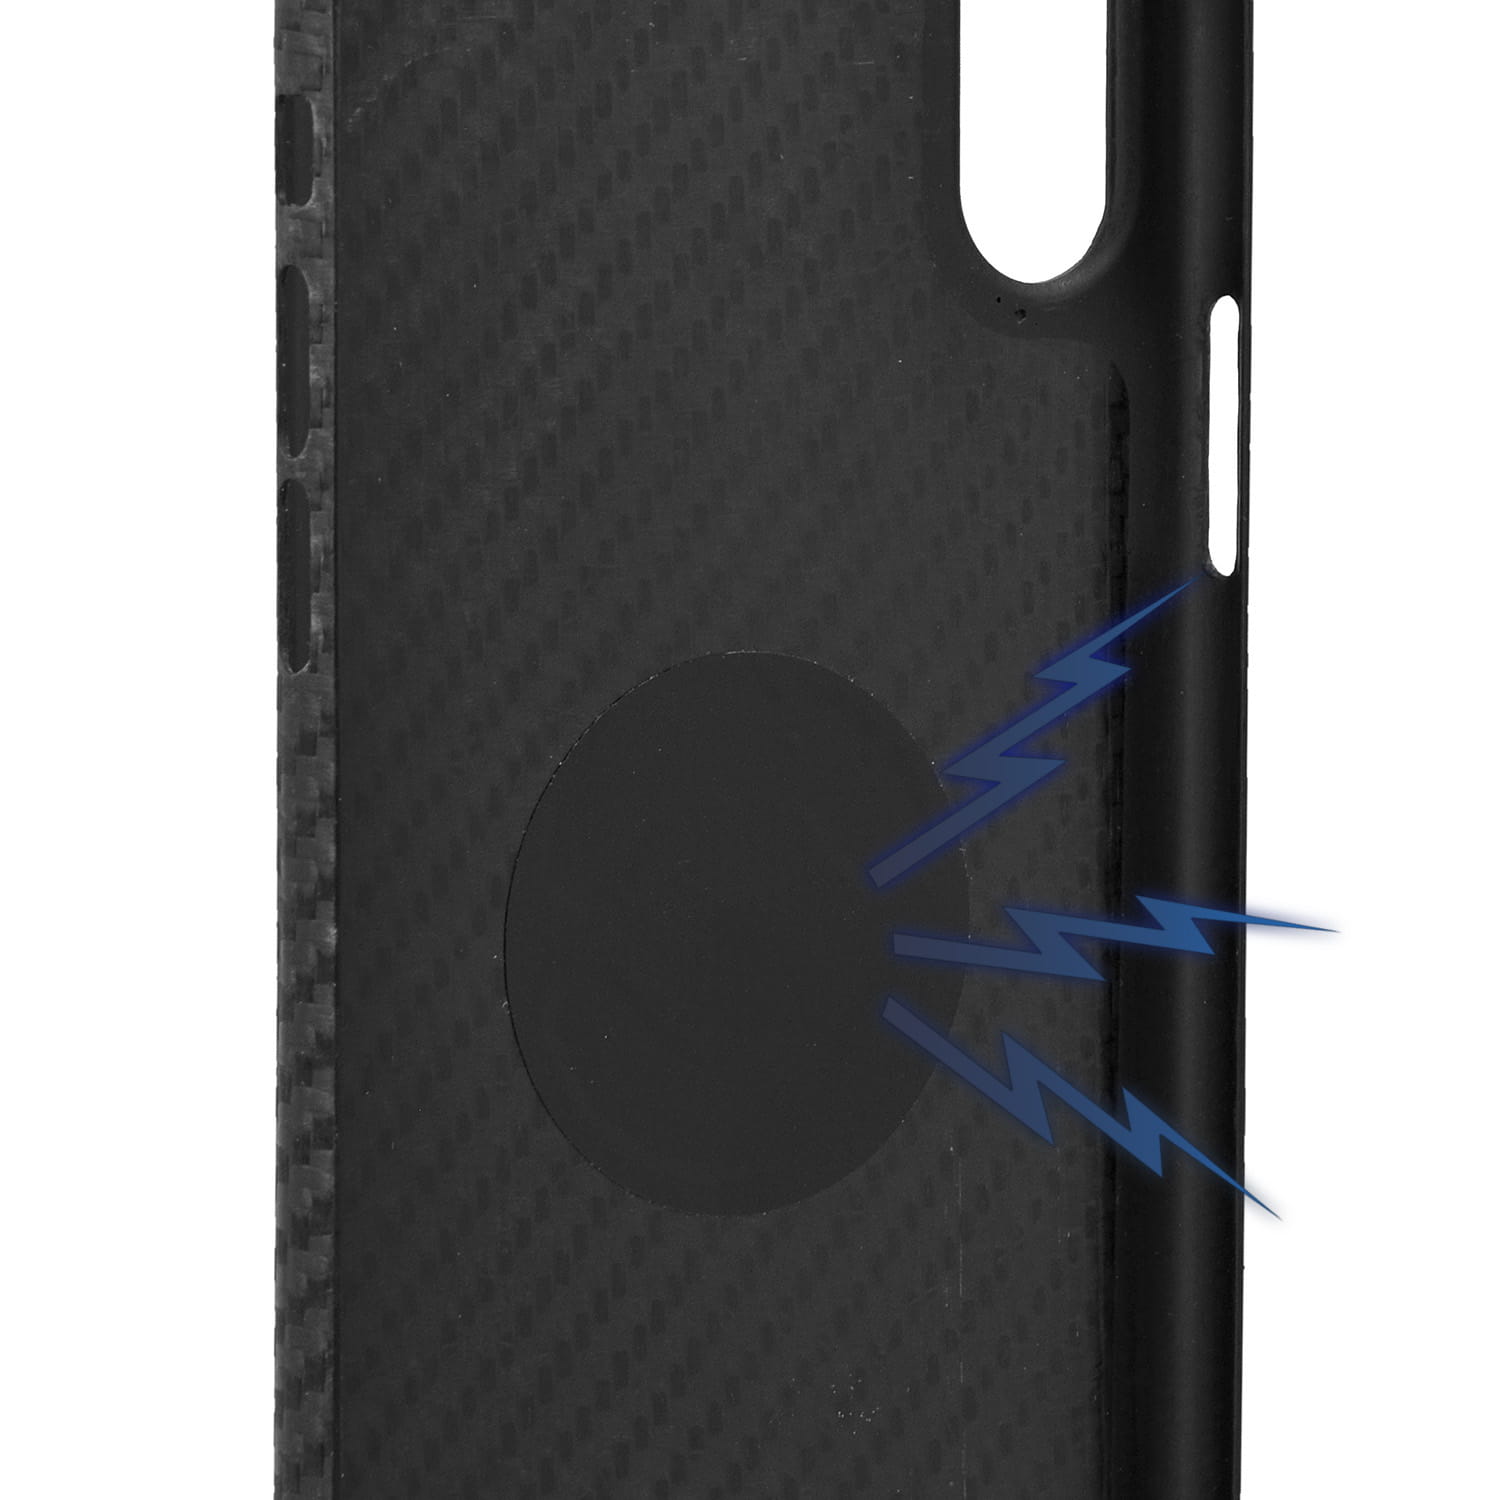 Carbon Schutzhülle Nevox Real Carbon Magnet aus Carbon- und Aramidfasern für iPhone Xs Max, schwarz.